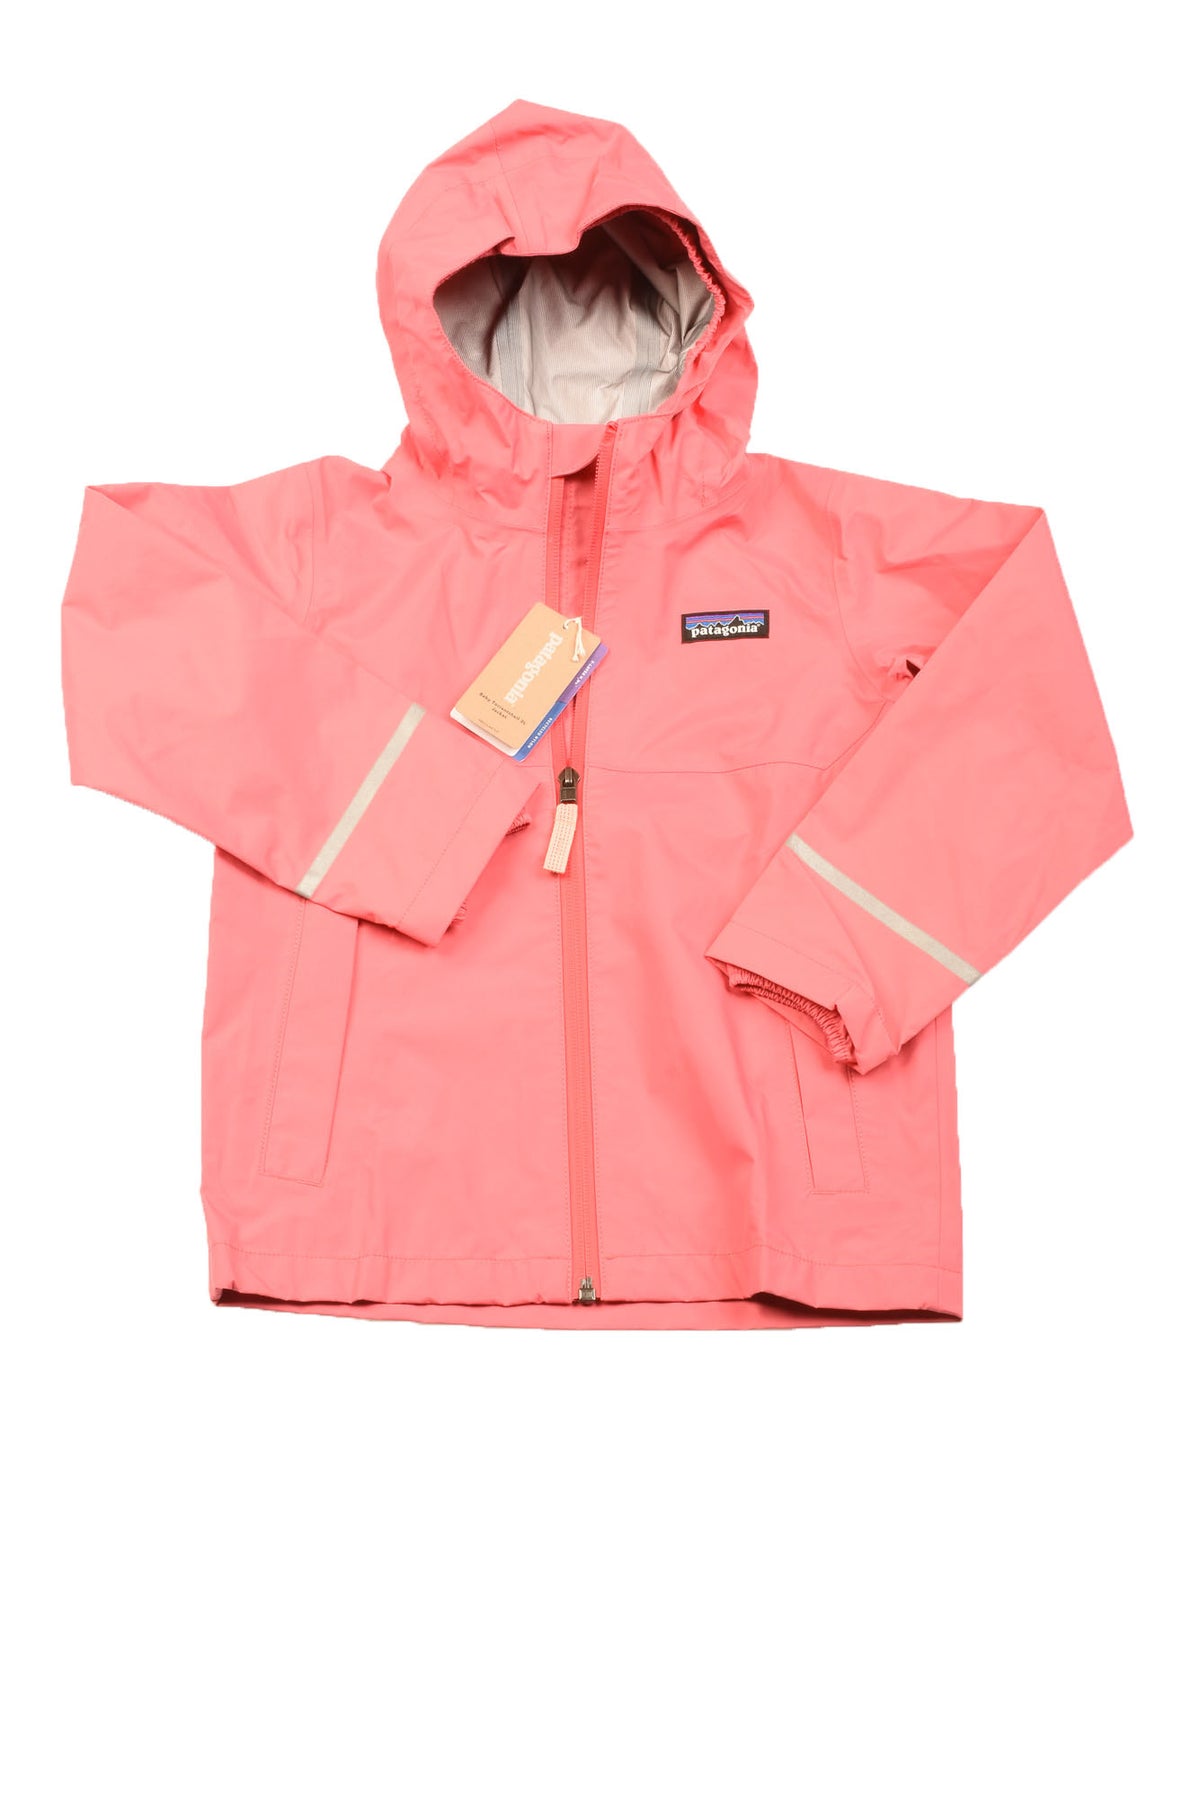 Patagonia Size 4T Toddler Girl&#39;s Jacket